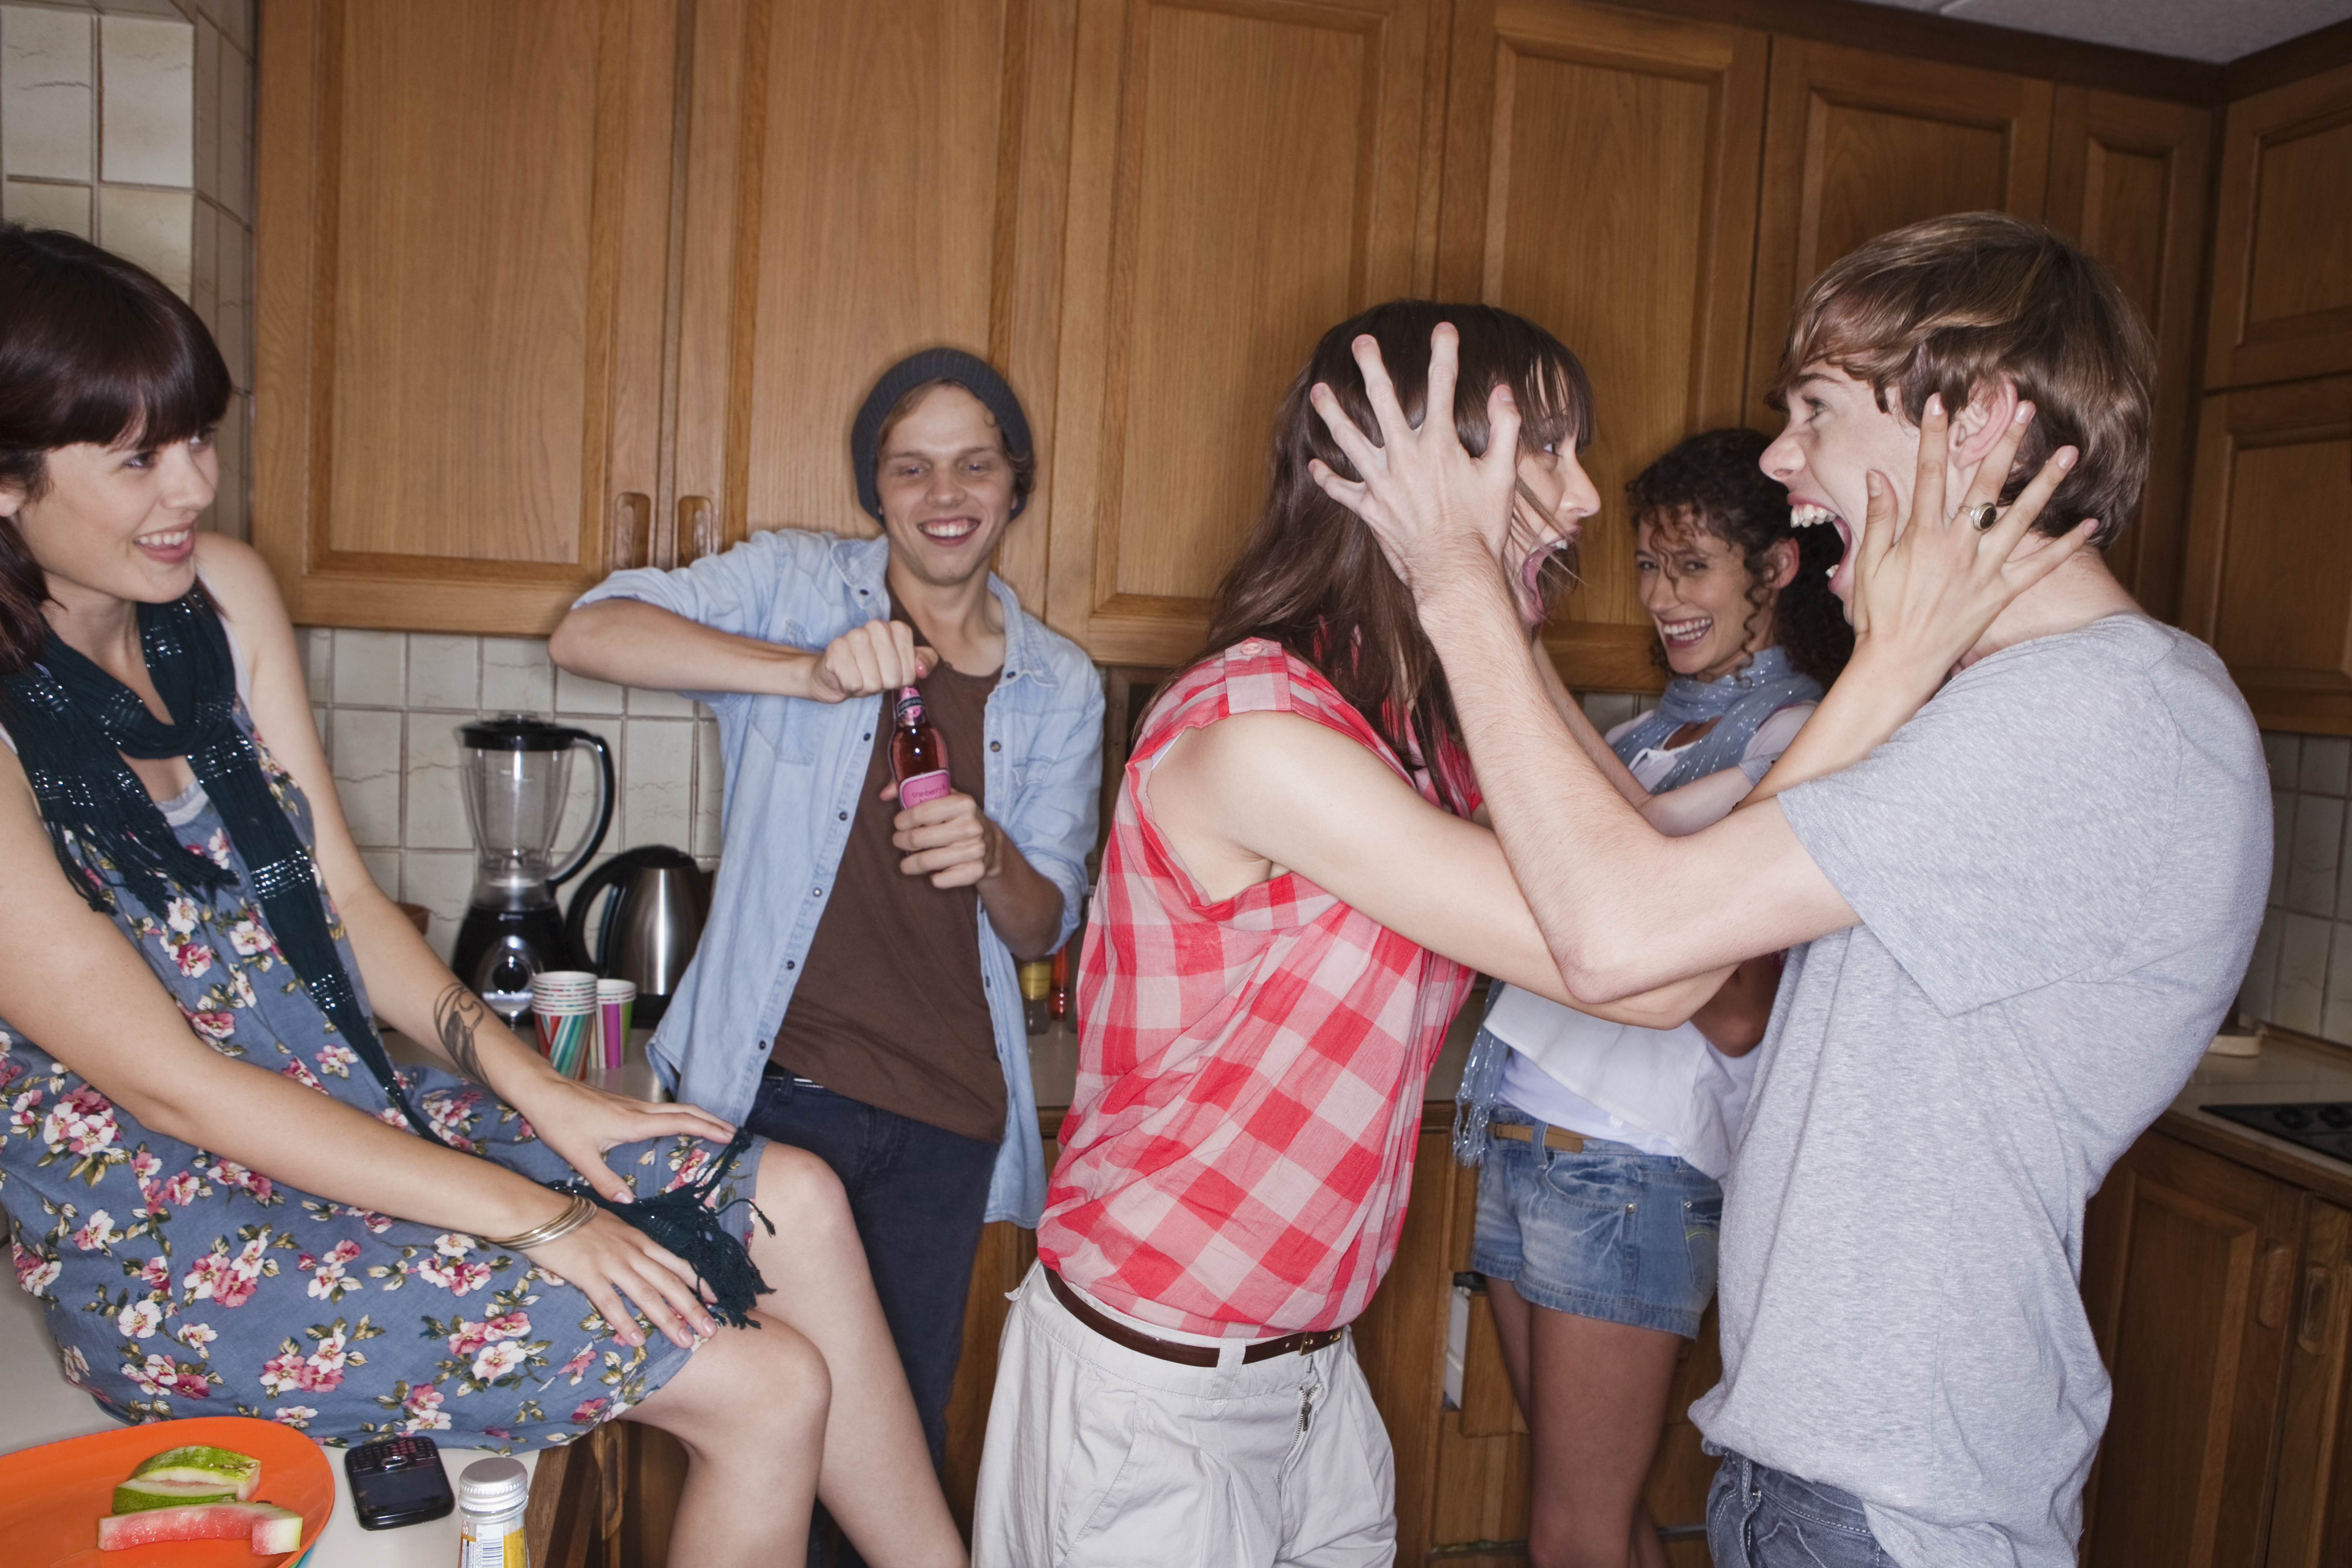 Des adolescents criant dans la cuisine | Source : Getty Images